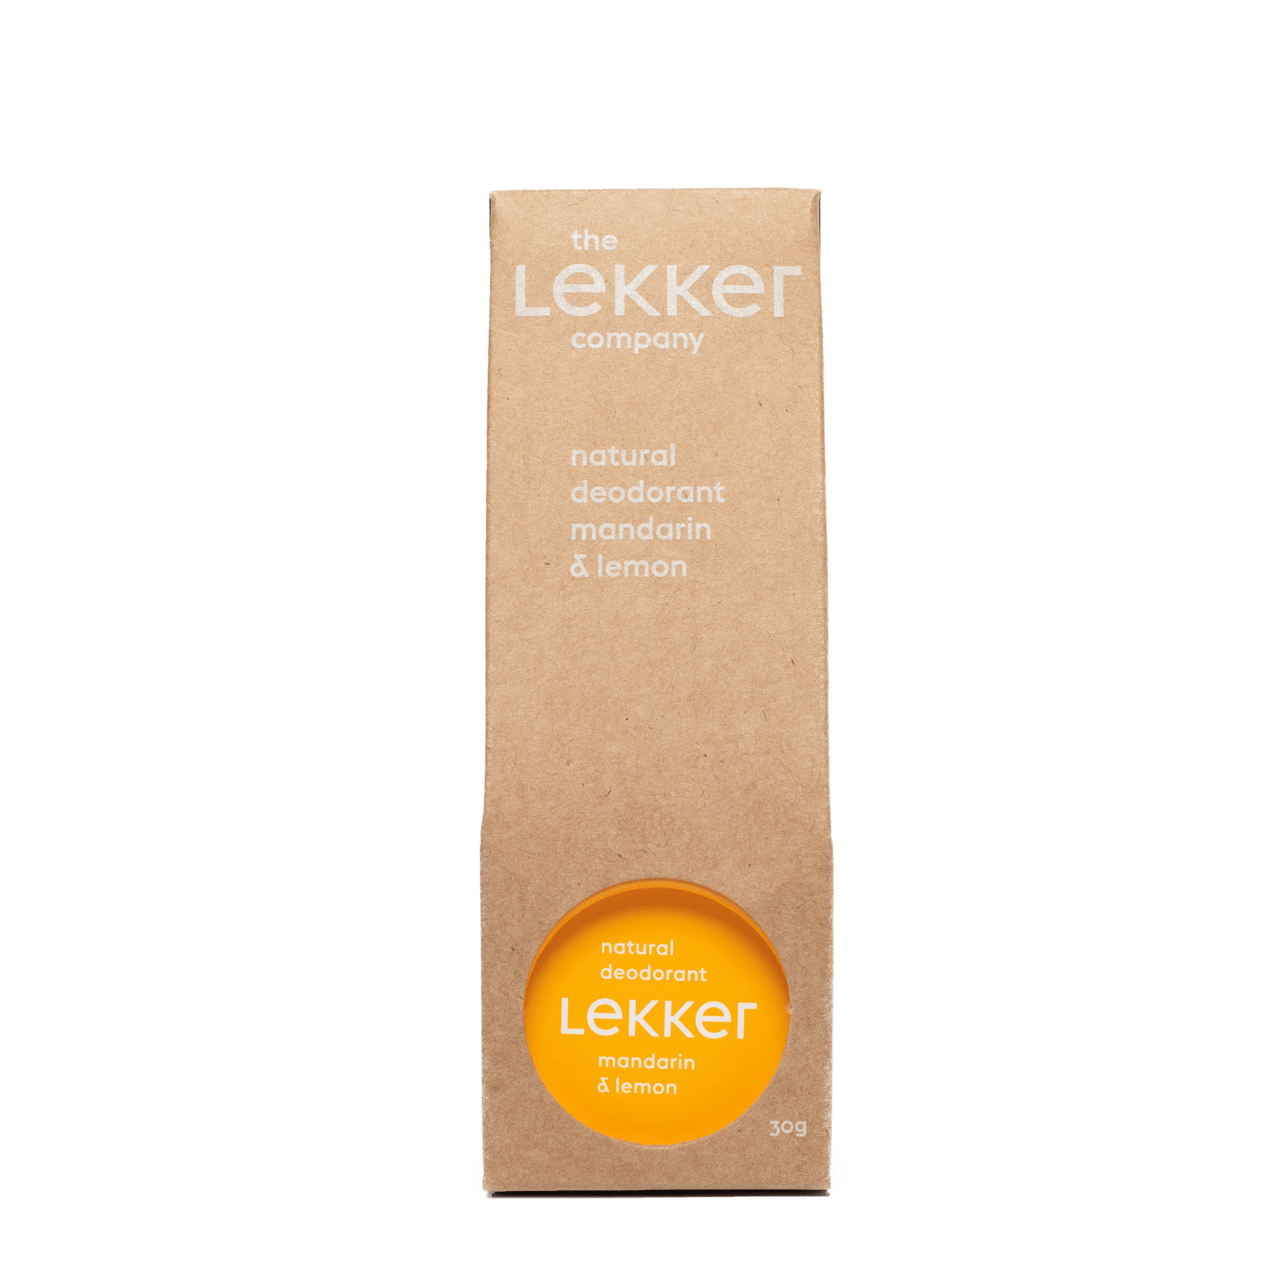 The Lekker Company Natural Deodorant MANDARIN & LEMON